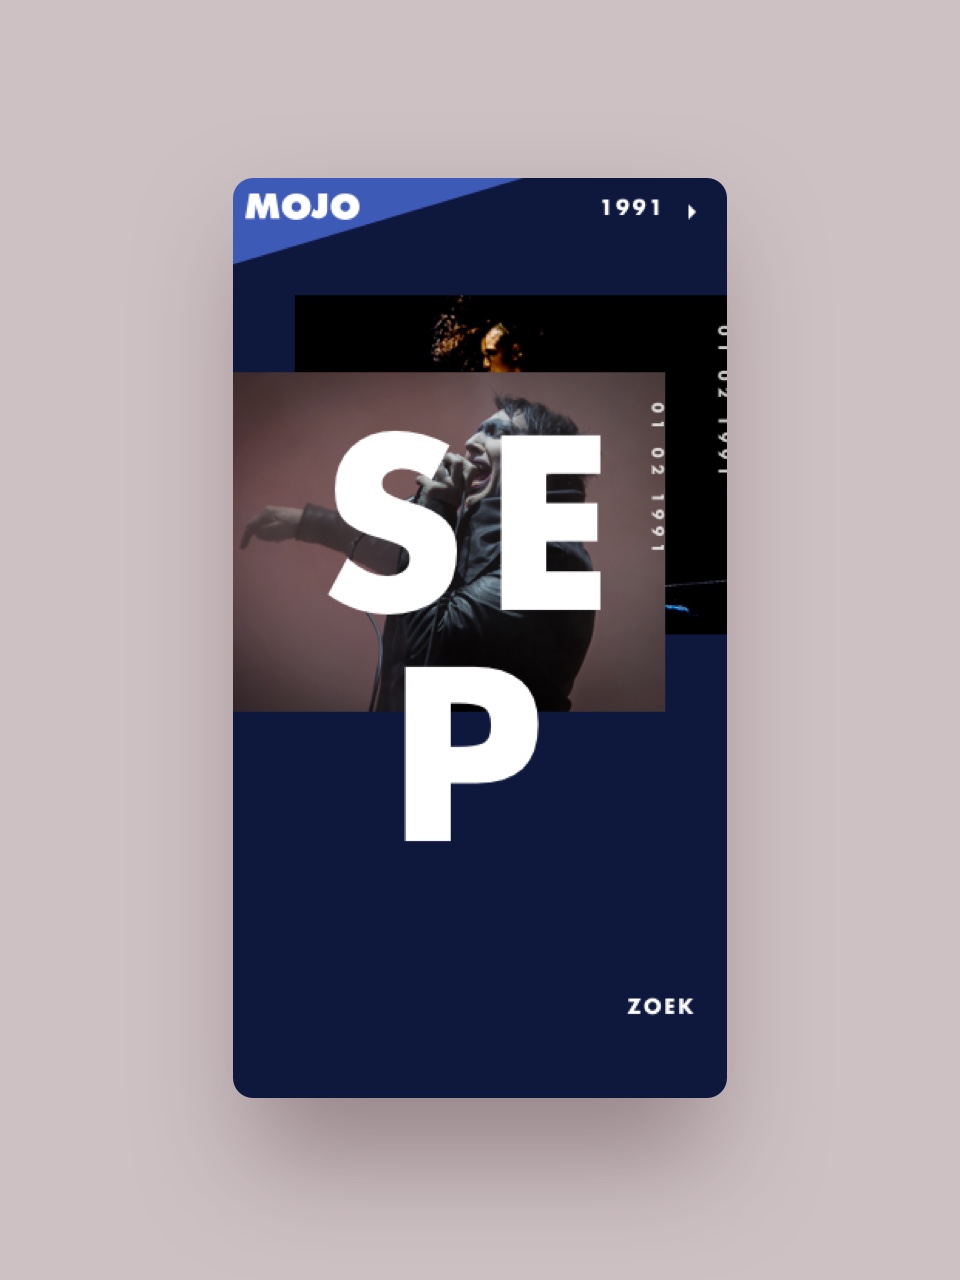 960-x-1280-mojo-1